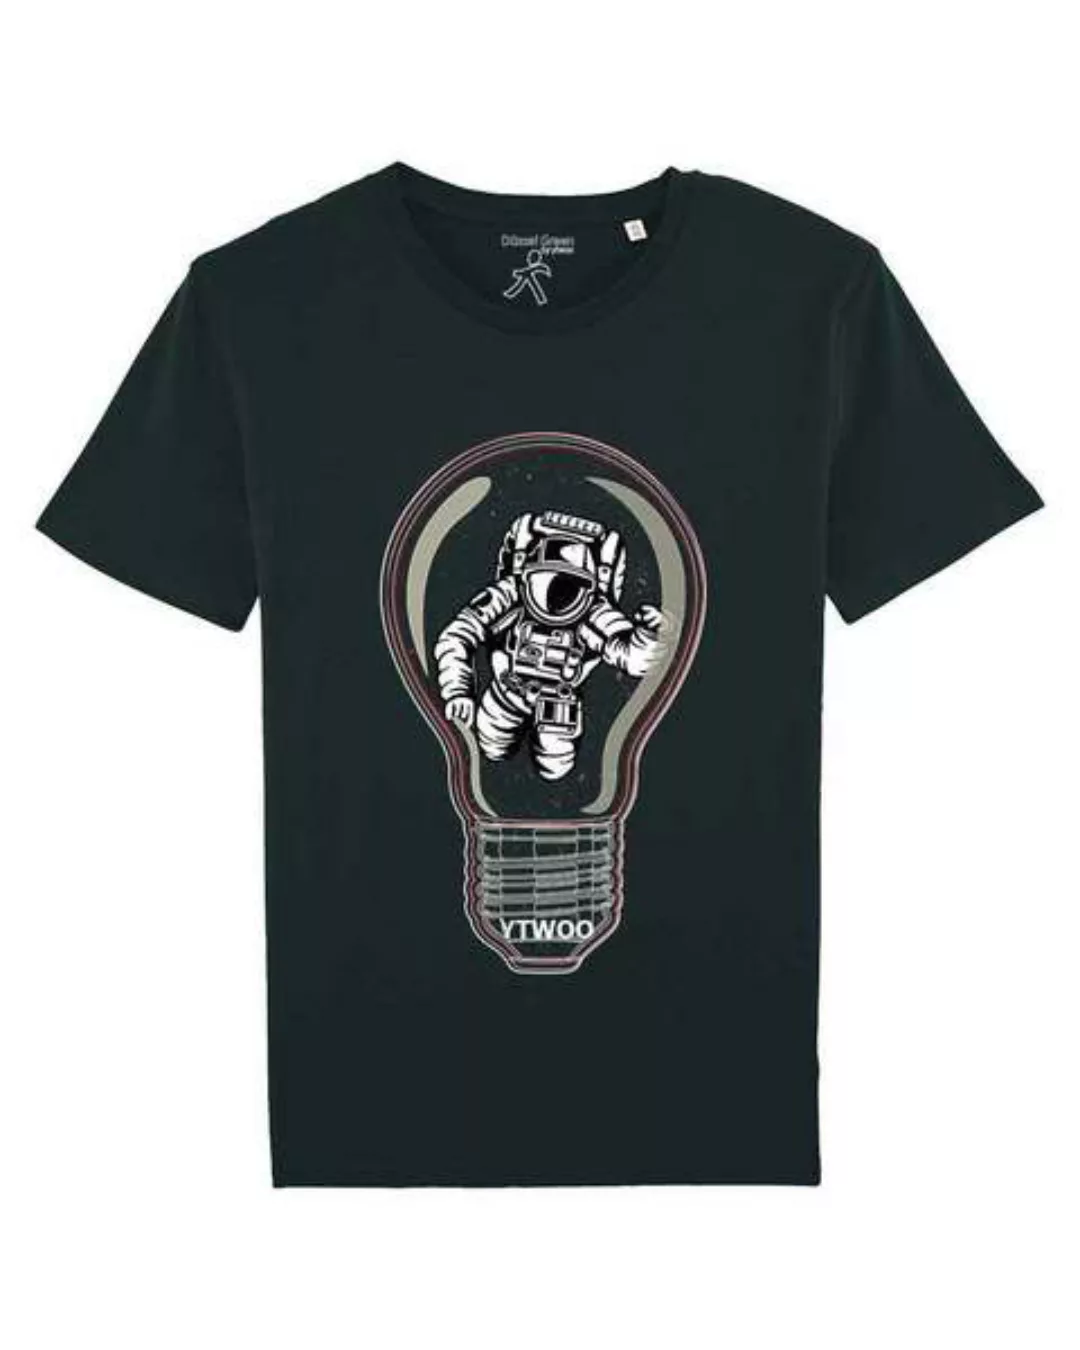 T-shirt Mit Astronauten In Glühbirne. Spaceman Inside The Box günstig online kaufen